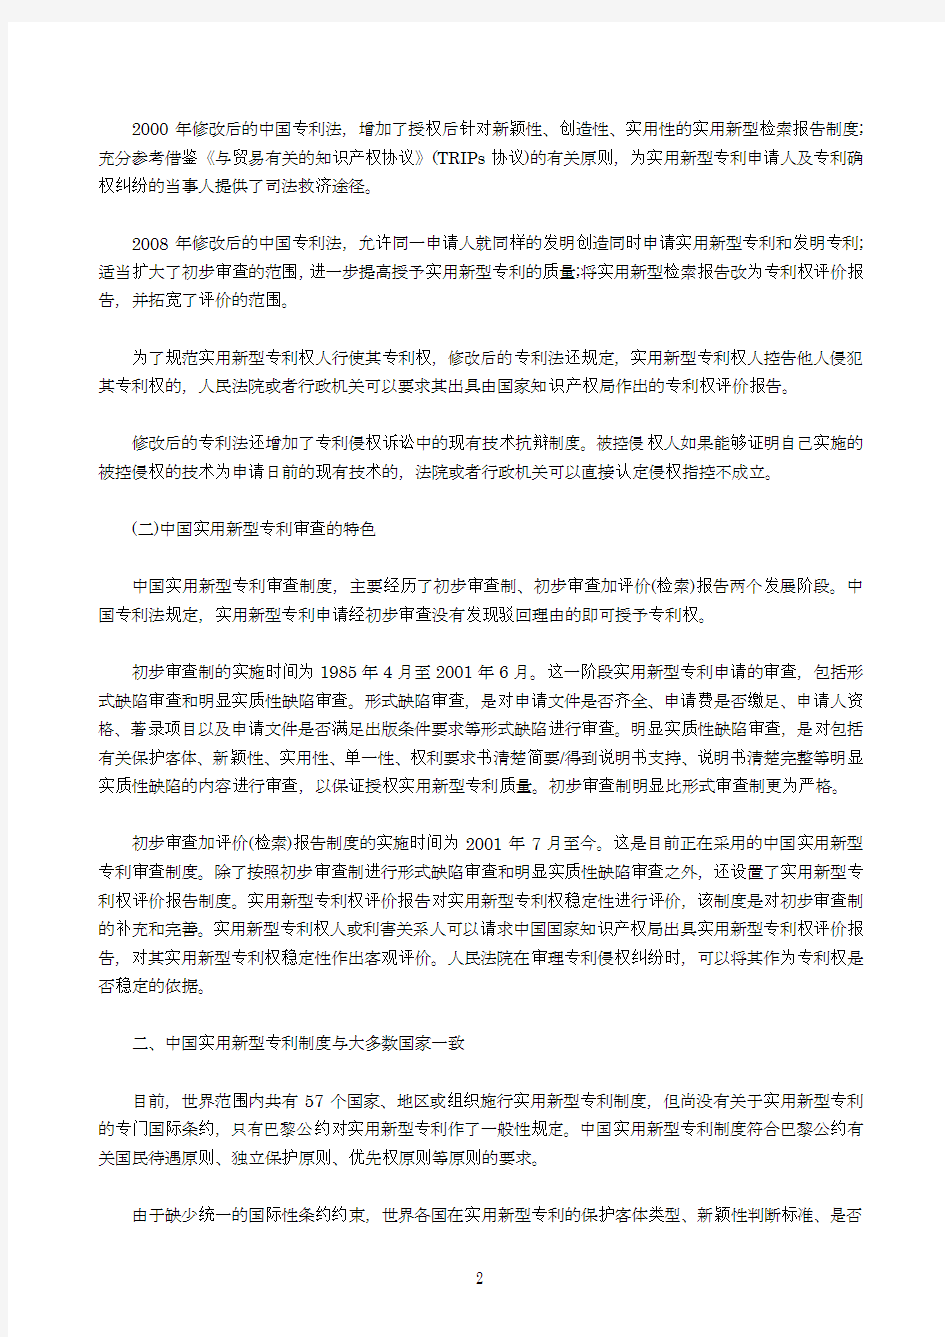 中国实用新型专利制度发展状况全文